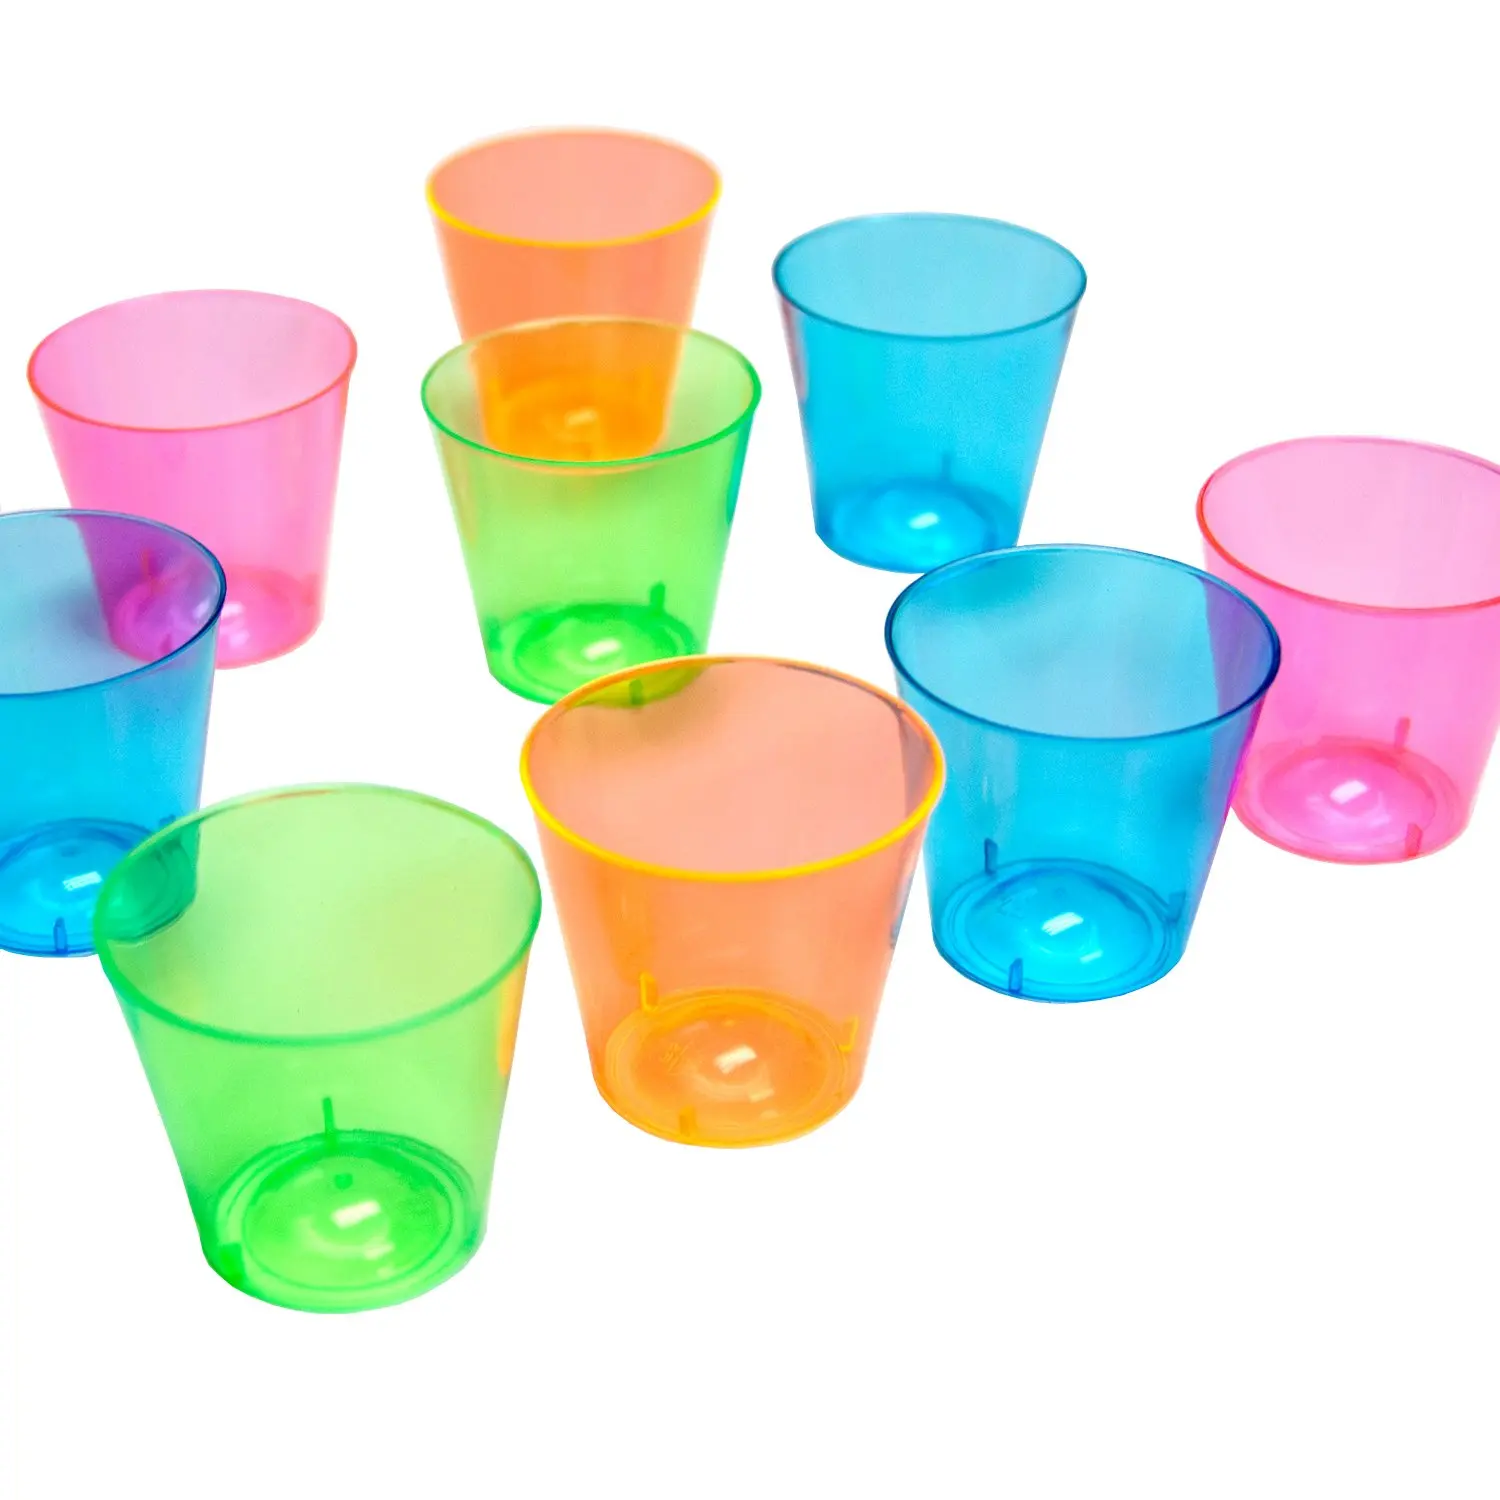 Купить стаканы на озоне. Стаканчик пластиковый. Разноцветные пластиковые стаканчики. Маленькие пластиковые стаканчики. Цветные одноразовые стаканчики.